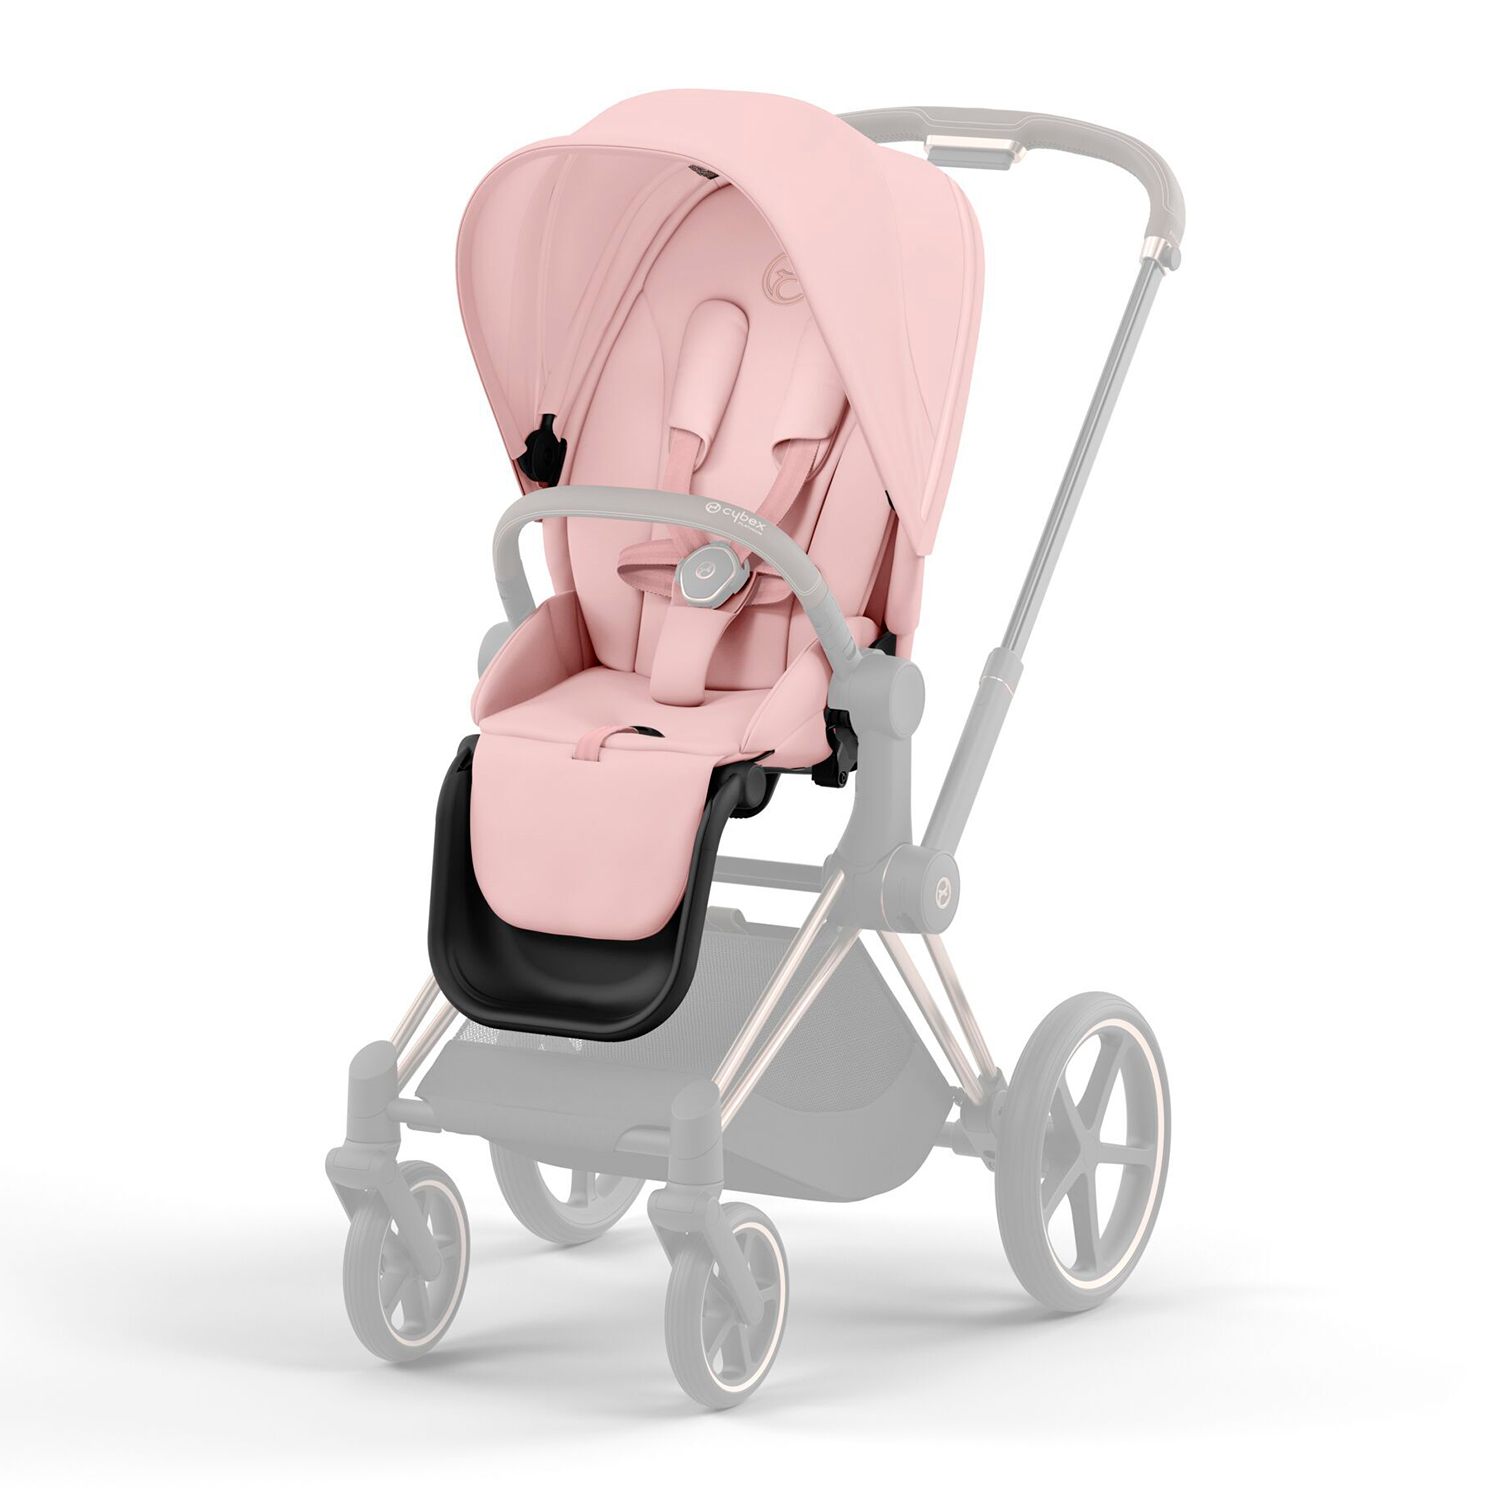 Набор чехлов прогулочного блока для коляски Priam IV Peach Pink CYBEX cybex подножка для старшего ребёнка к коляске priam balios s 2019